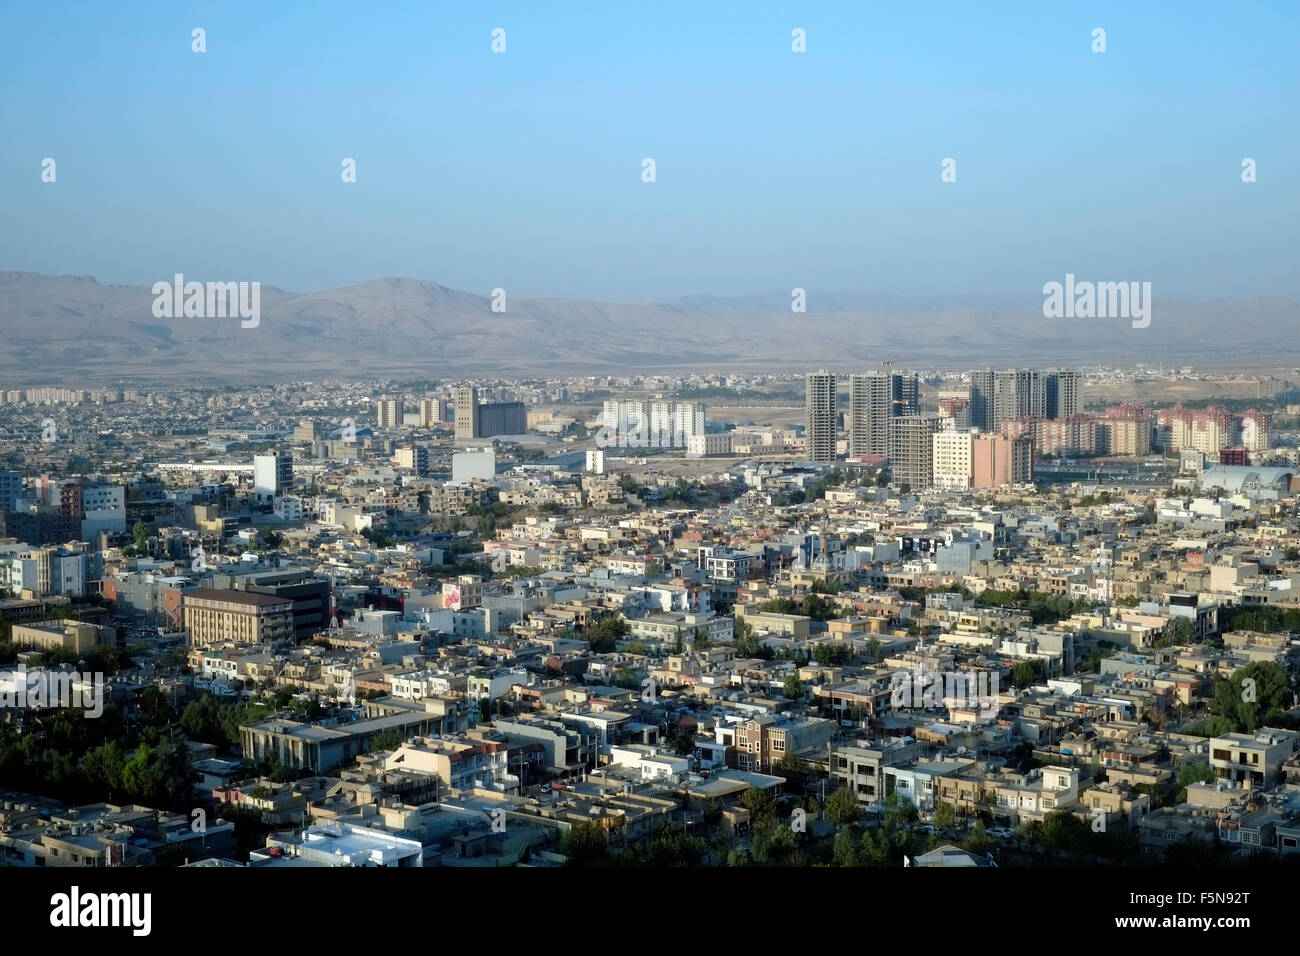 Vista panoramica di Sulaymaniyahalso anche chiamato Slemani, una città nel Kurdistan iracheno nella parte nord-orientale dell'Iraq Foto Stock